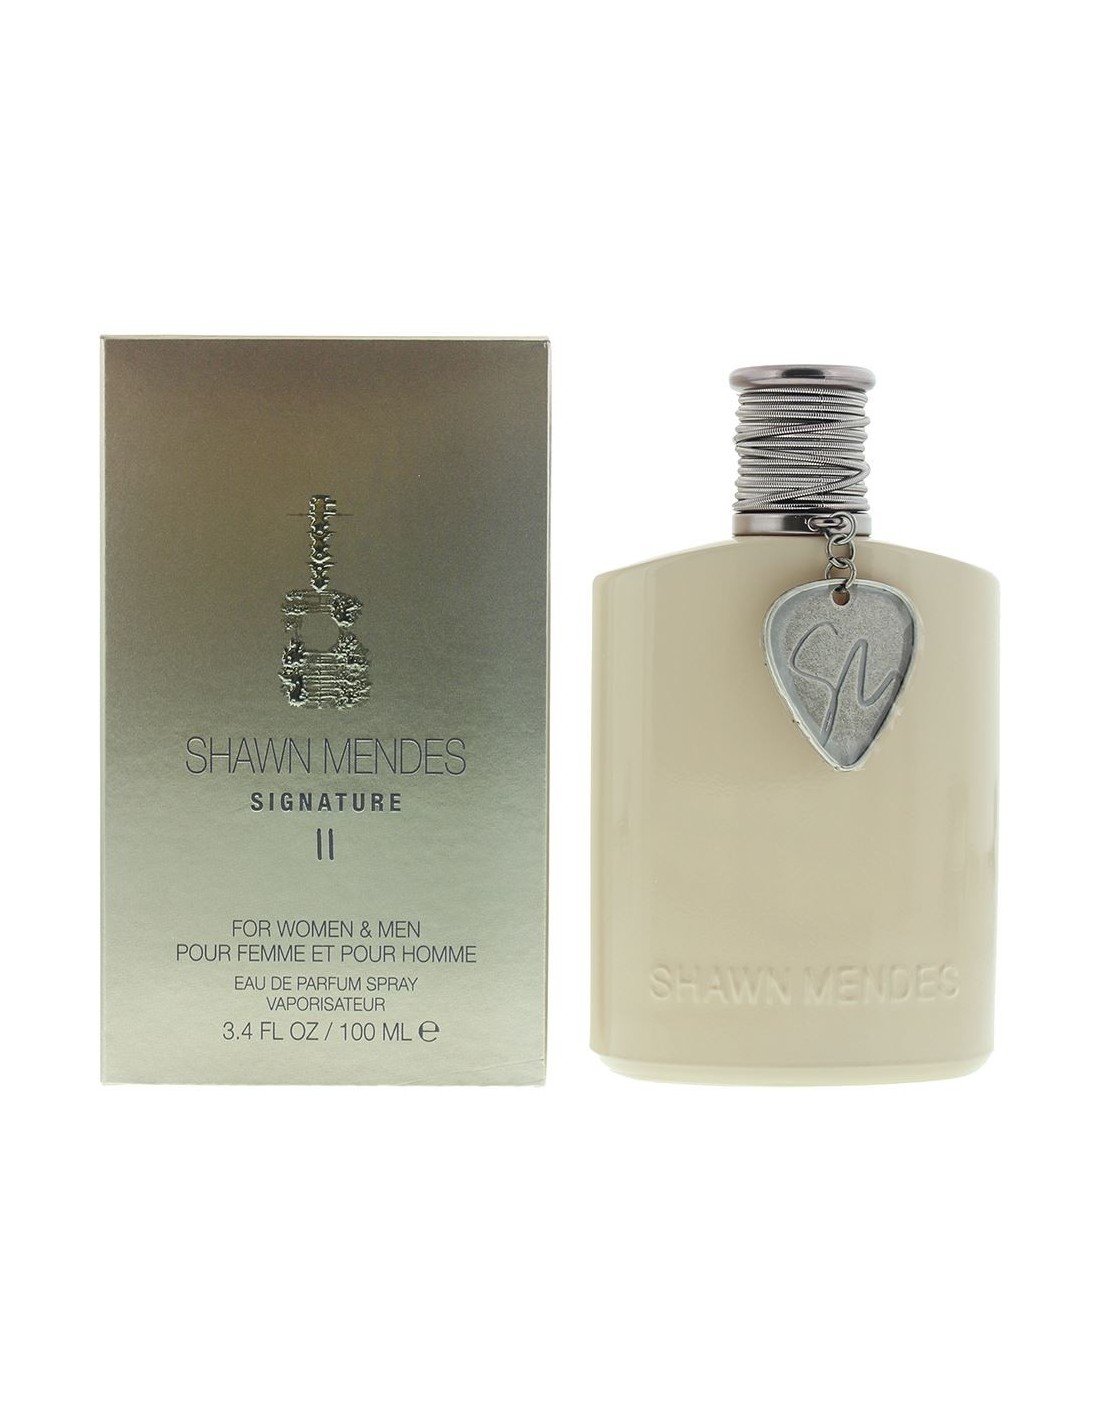 Shawn Mendes Signature II for women & men 100 ml eau de parfum